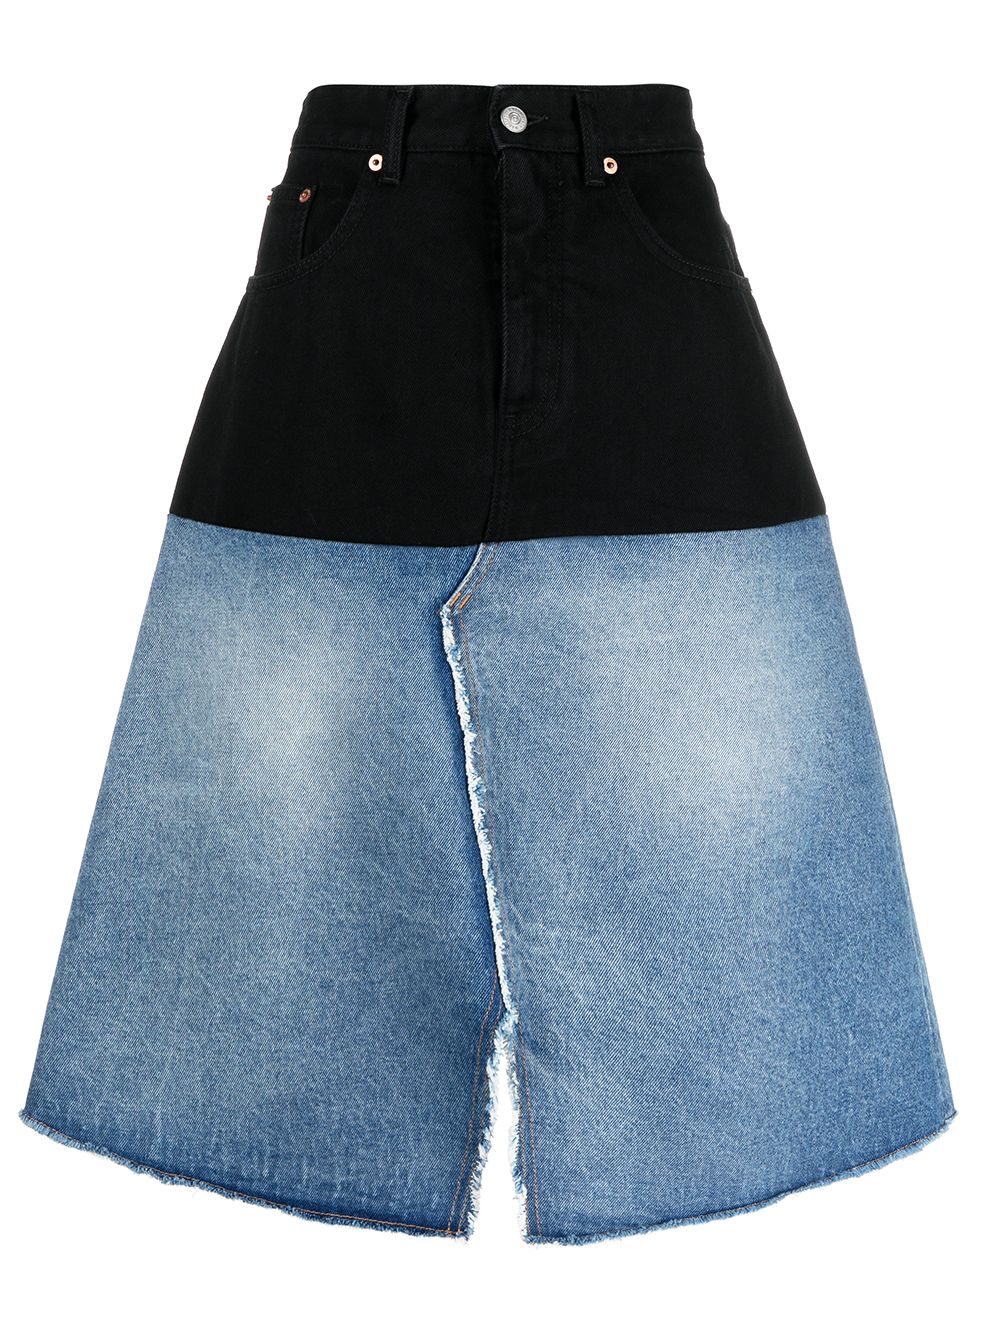 фото Mm6 maison margiela двухцветная джинсовая юбка